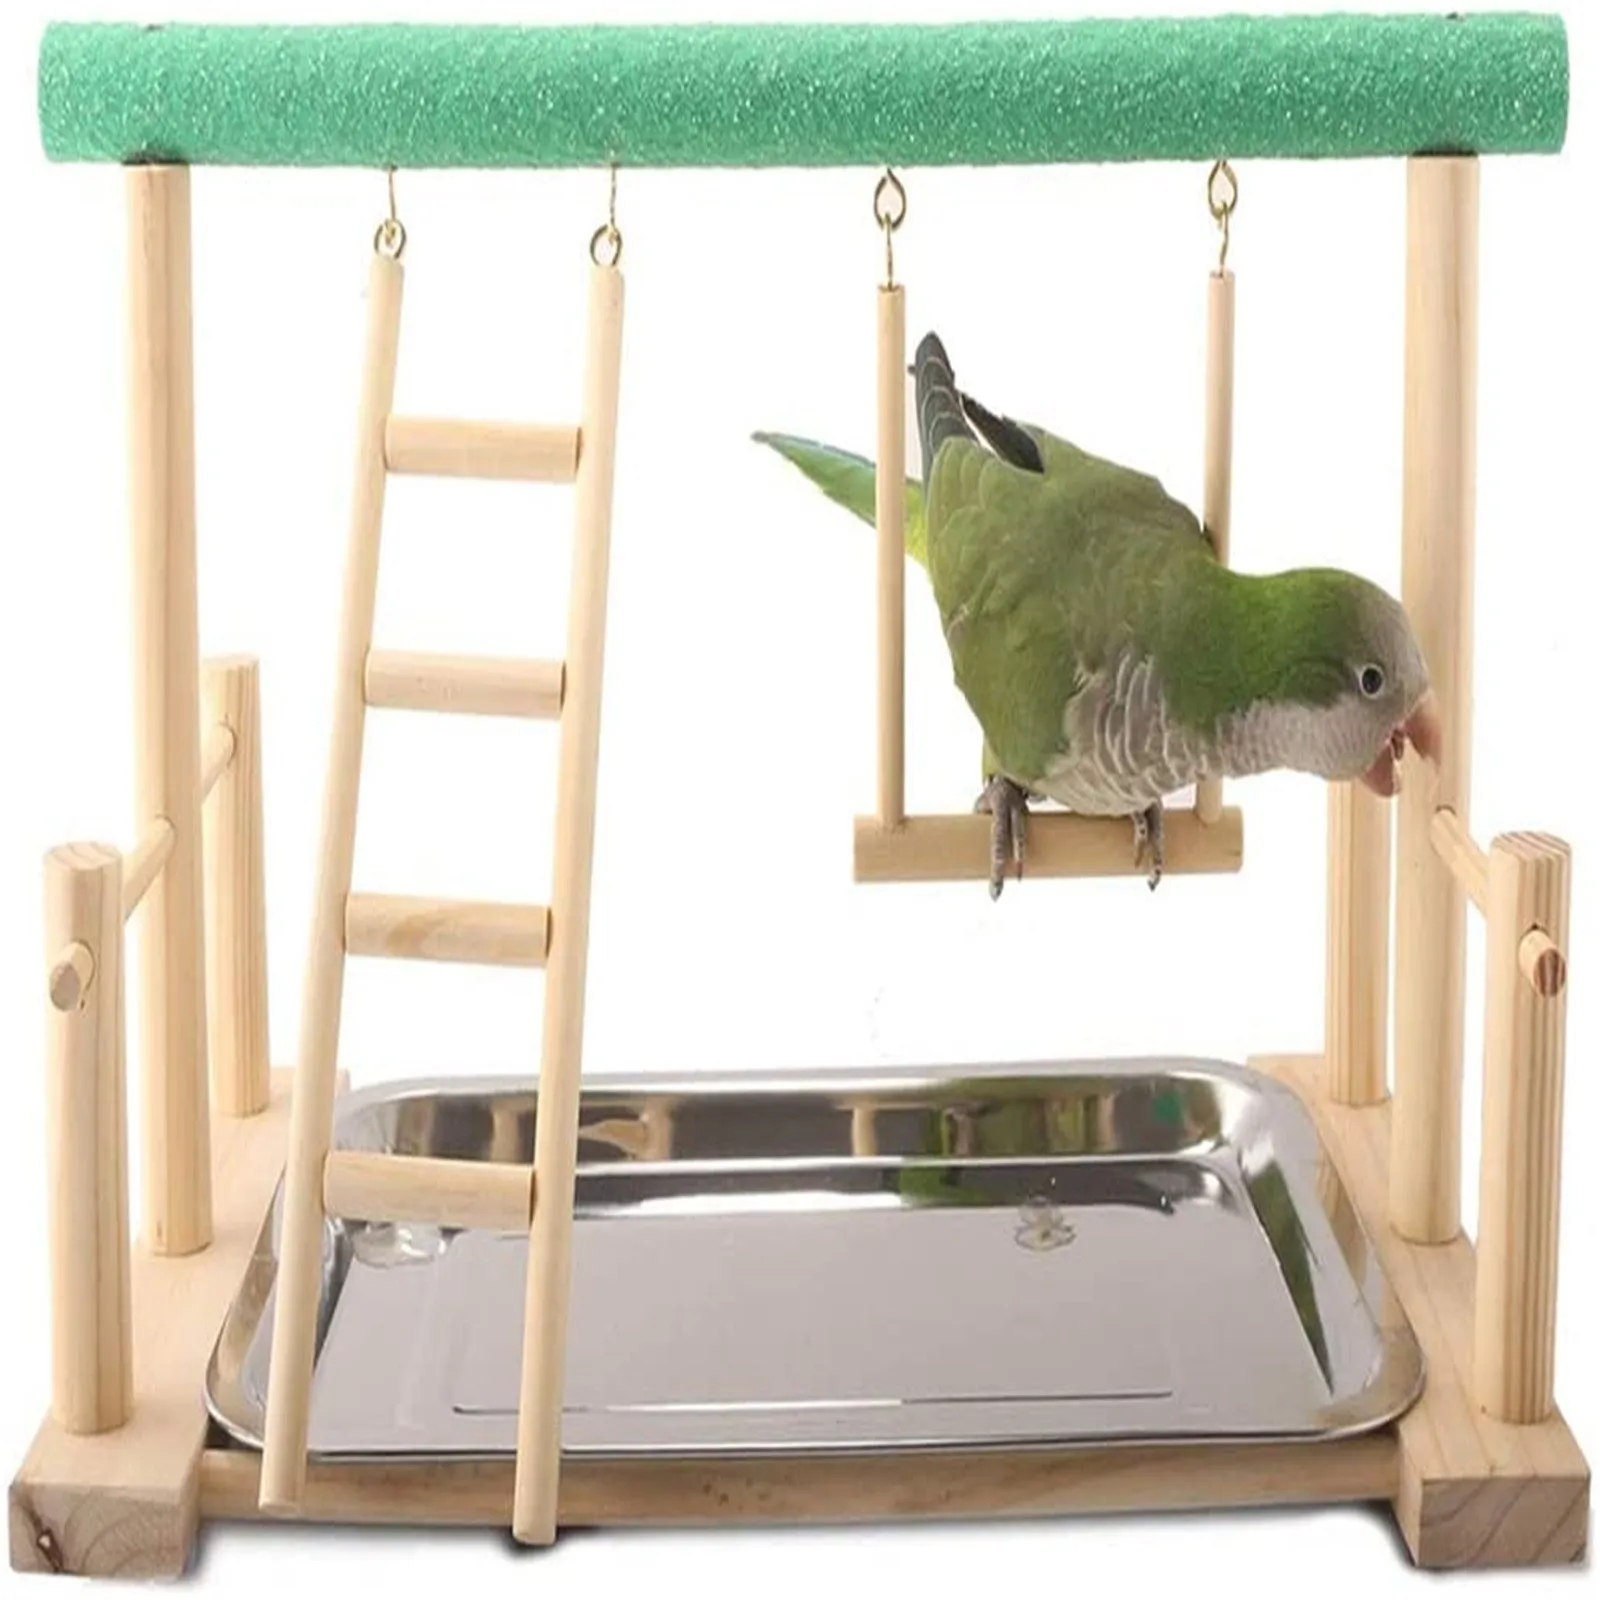 鳥の形をした木製のはしご,オウム,インコ,ケイコ,テラス,階段,鳥のアクセサリーのおもちゃ|Bird Toys| - AliExpress